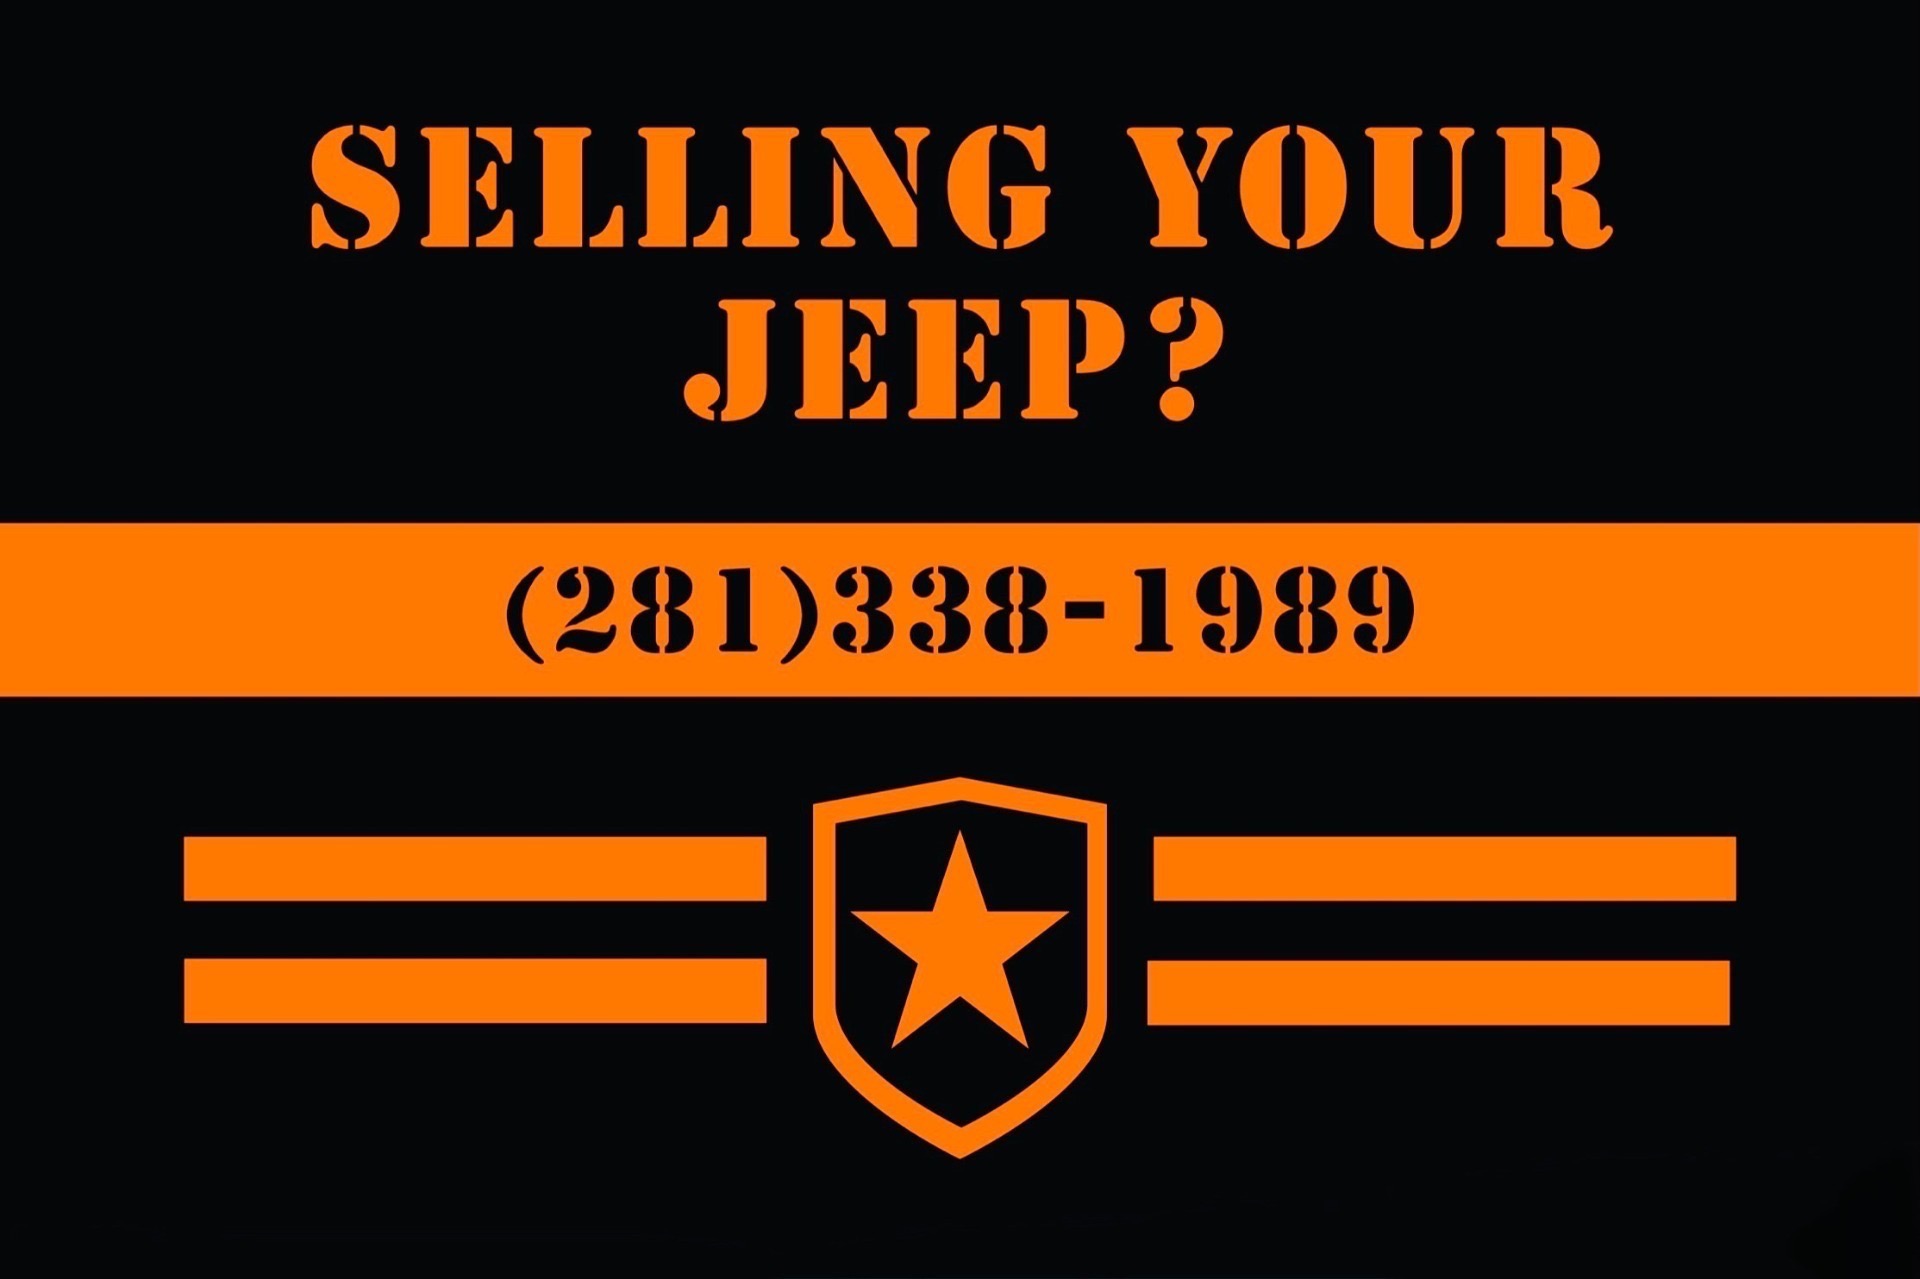 Used-1978-Jeep-CJ-7-CJ-7